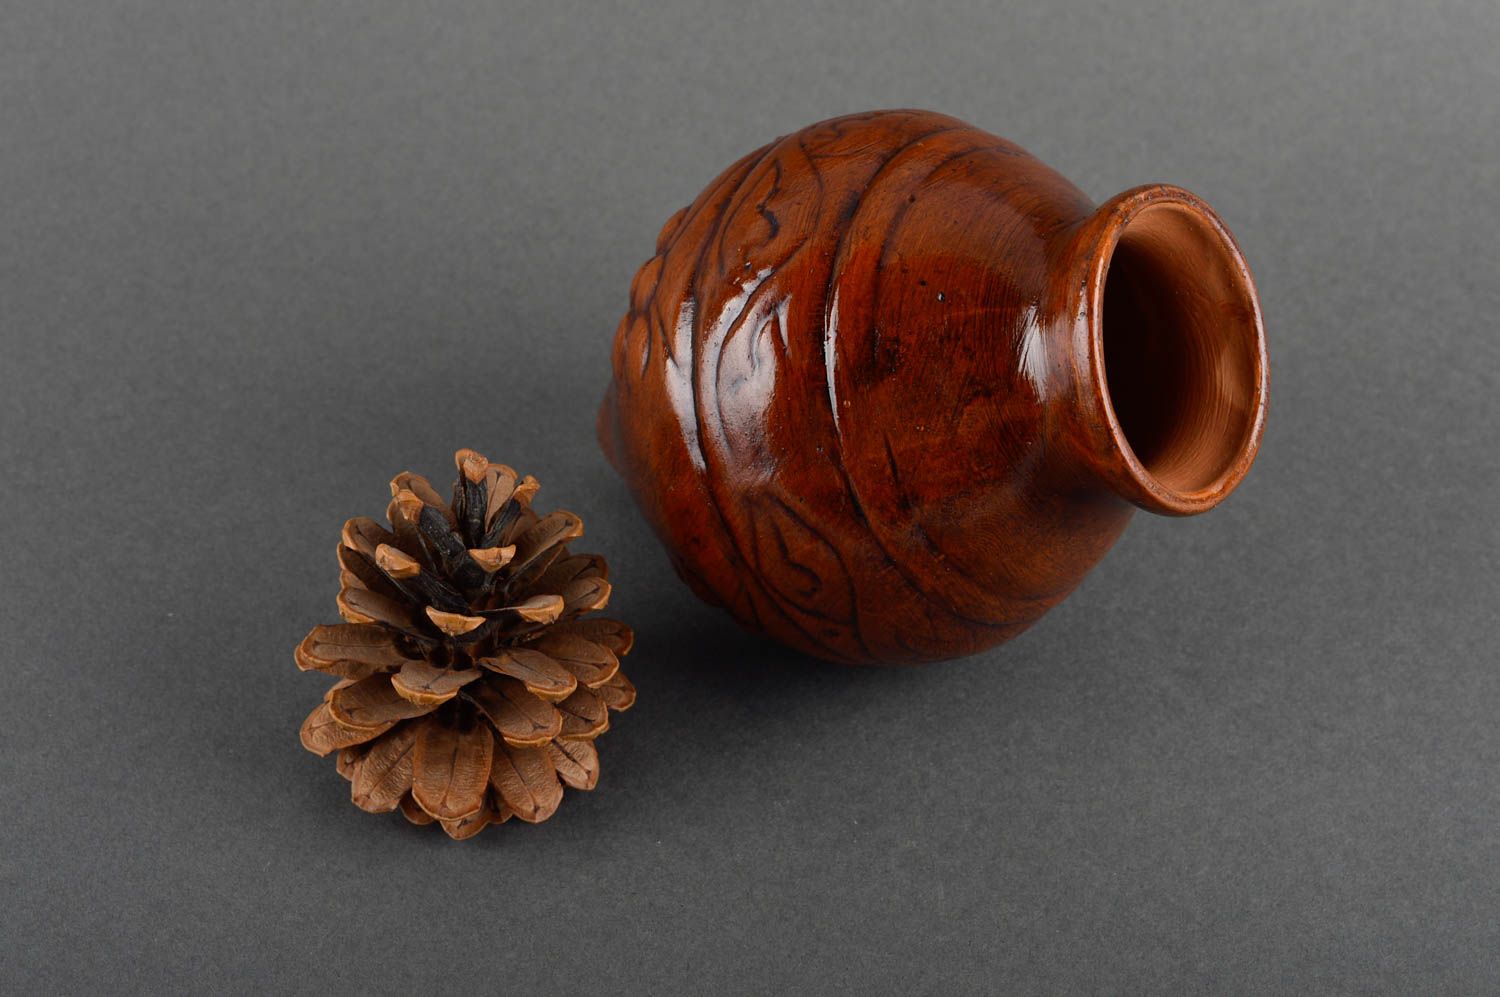 15 oz ceramic shelf decorative pitcher for home décor 0,6 lb photo 1